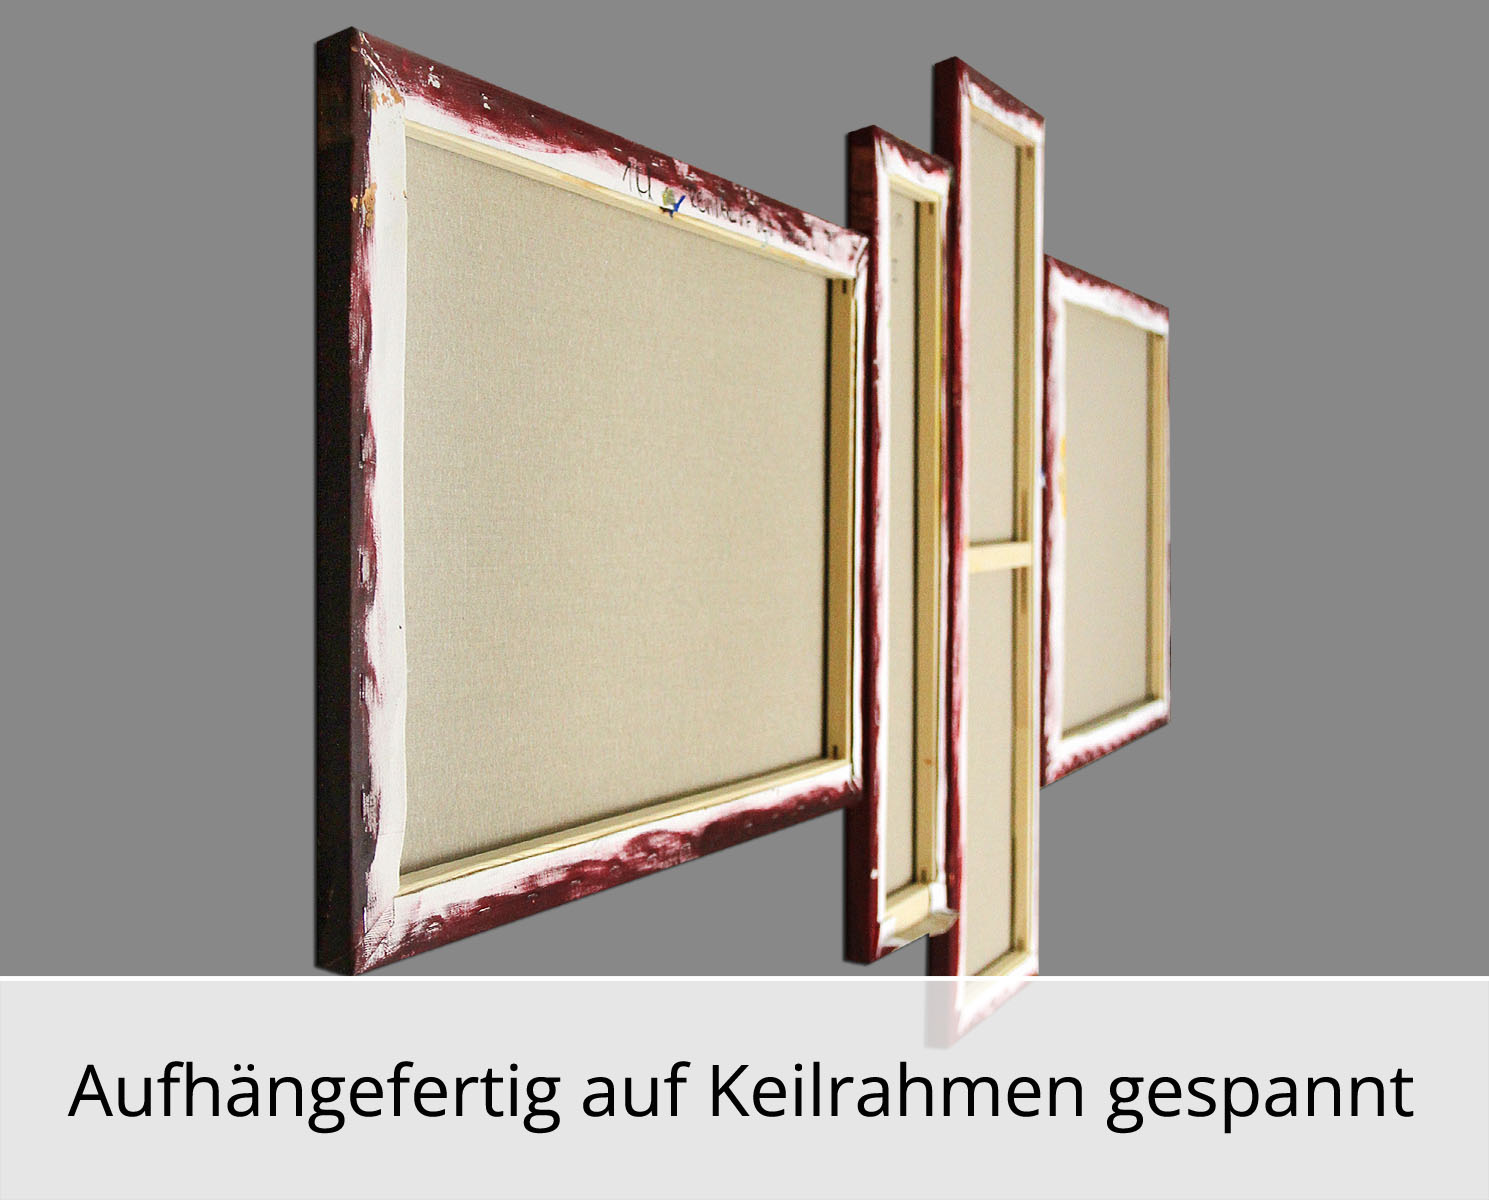 R. König: "Revival of old Values II", mehrteilige Acrylbilder, Originalgemälde (Unikat) (ri)